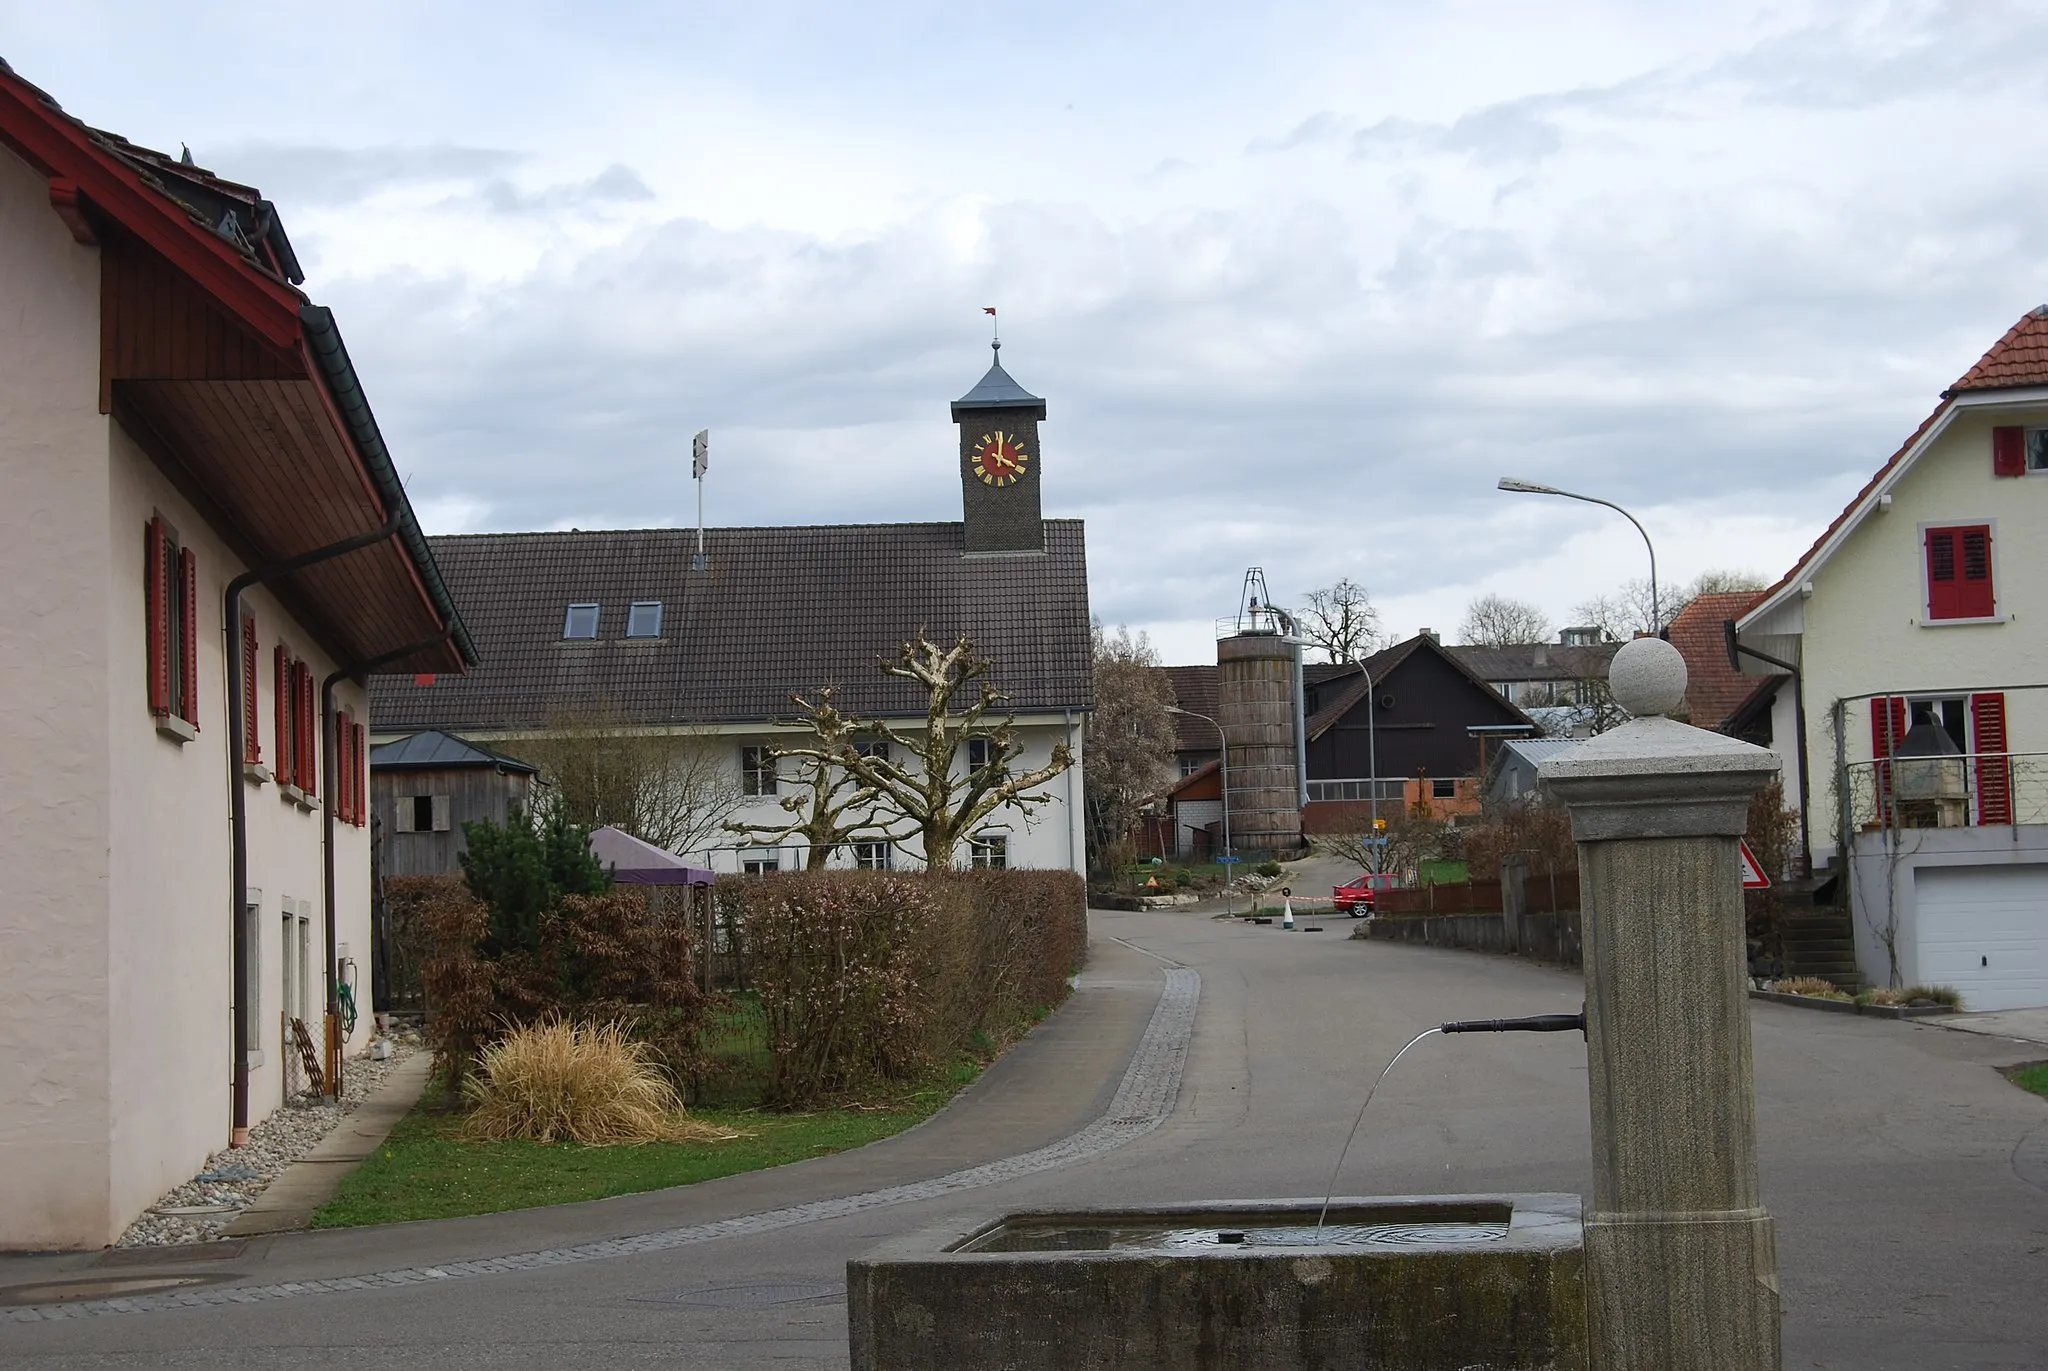 Photo showing: Scherz, canton of Aargau, Switzerland